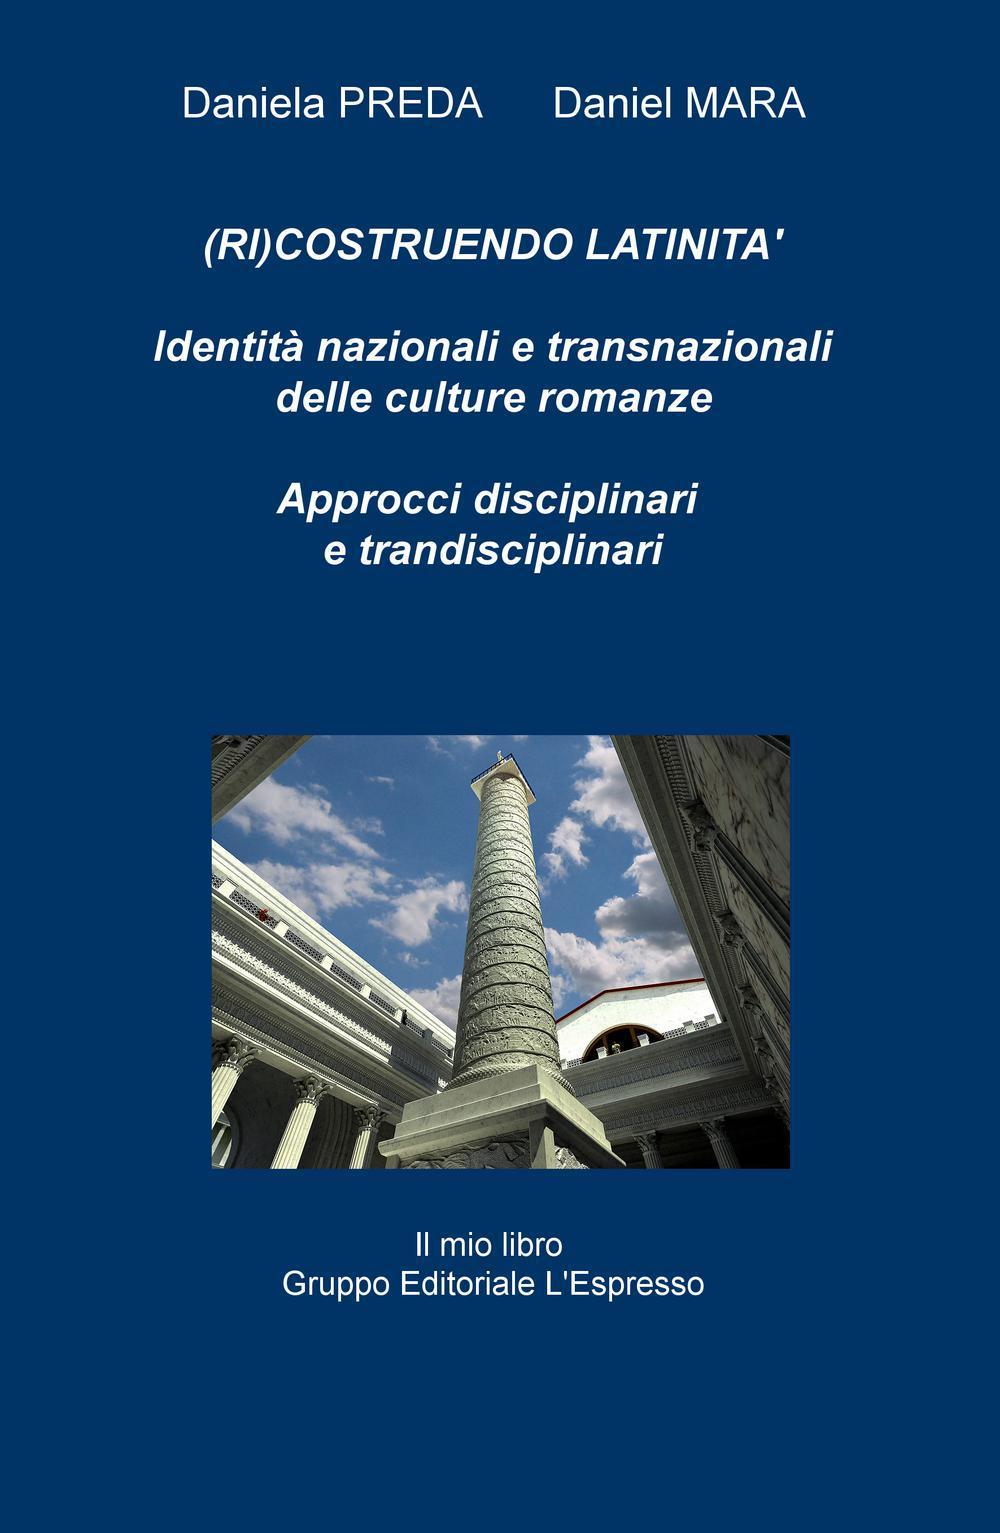 (Ri)costruendo latinità. Identità nazionali e transnazionali delle culture romanze, approcci interdisciplinari e transdisciplinari. Ediz. multilingue